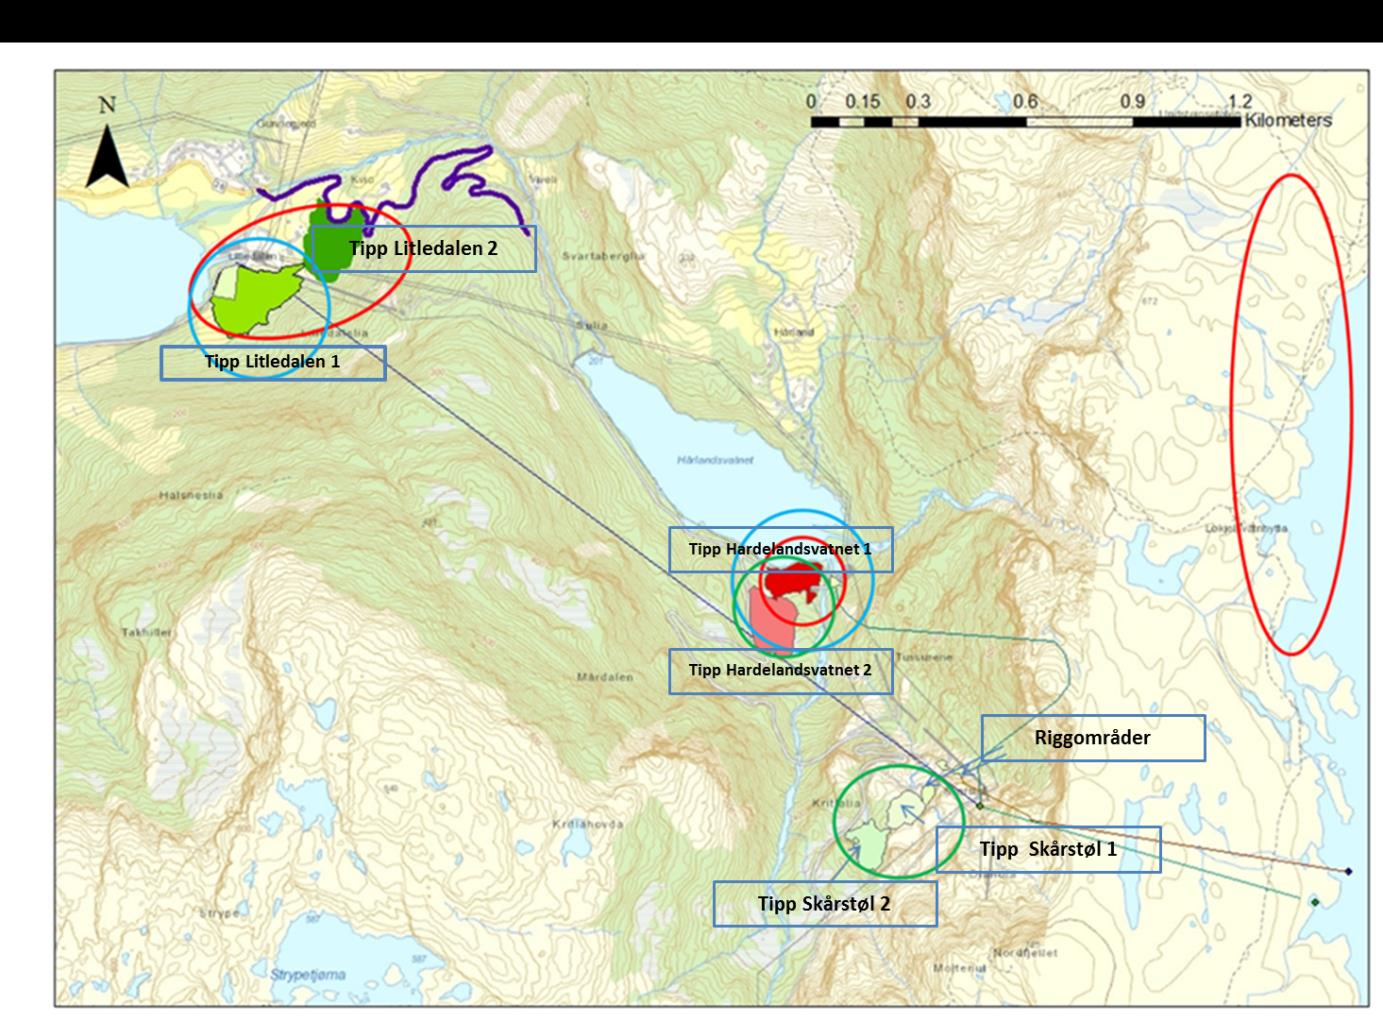 Figur 7-1 Oversikt over områder som er befart 6.juli 2013 av Toralf Tysse (markert med blå sirkel), 25. juni 2015 av Hanna Bjørgaas (markert med rød sirkel) og 27.05.